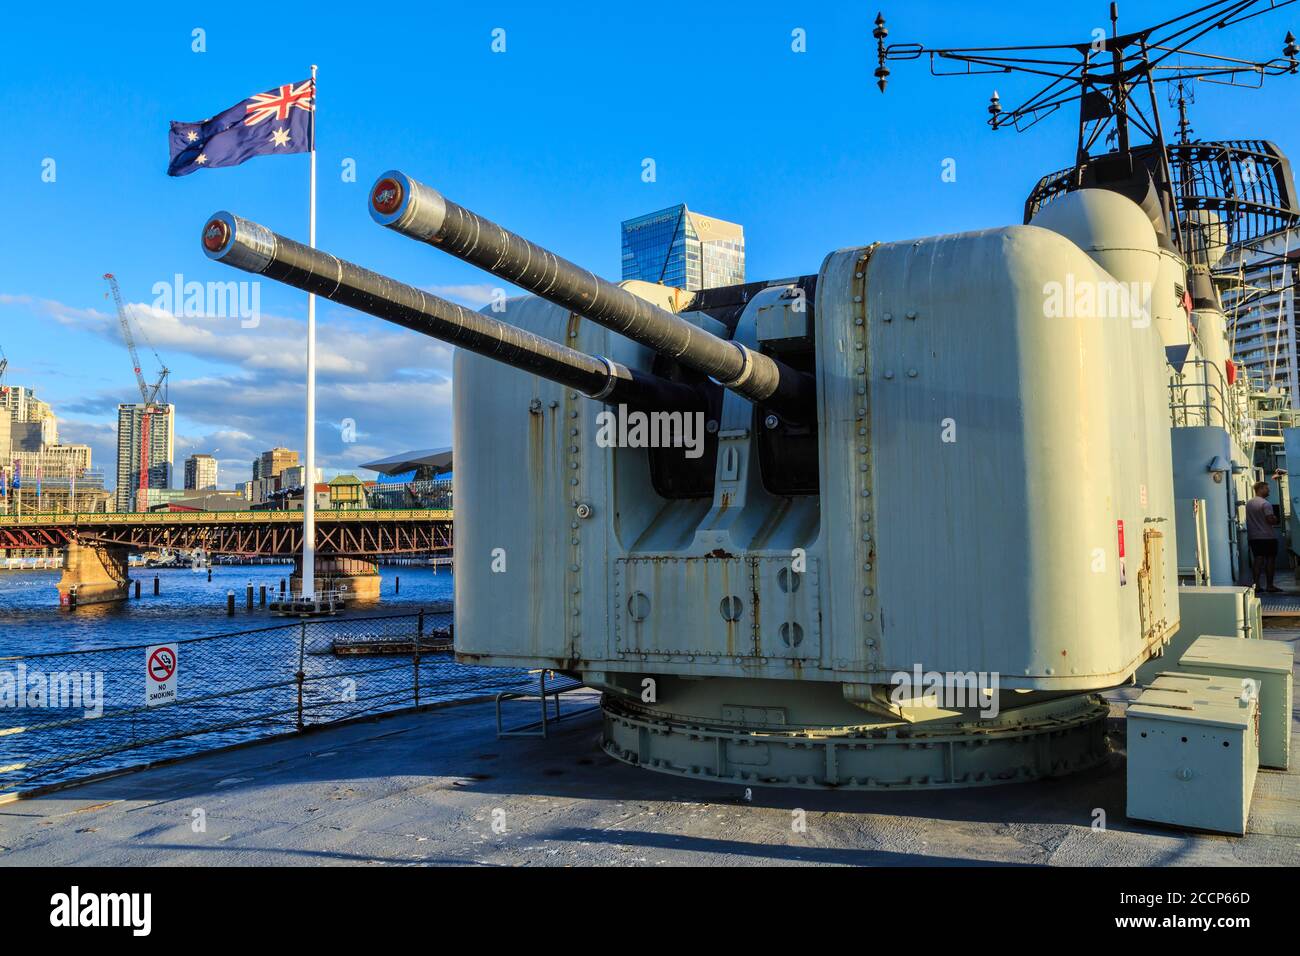 Torretta di armi a bordo del cacciatorpediniere HMAS Vampire (1959), ora una nave museo a Darling Harbour, Sydney, Australia. Maggio 29 2019 Foto Stock